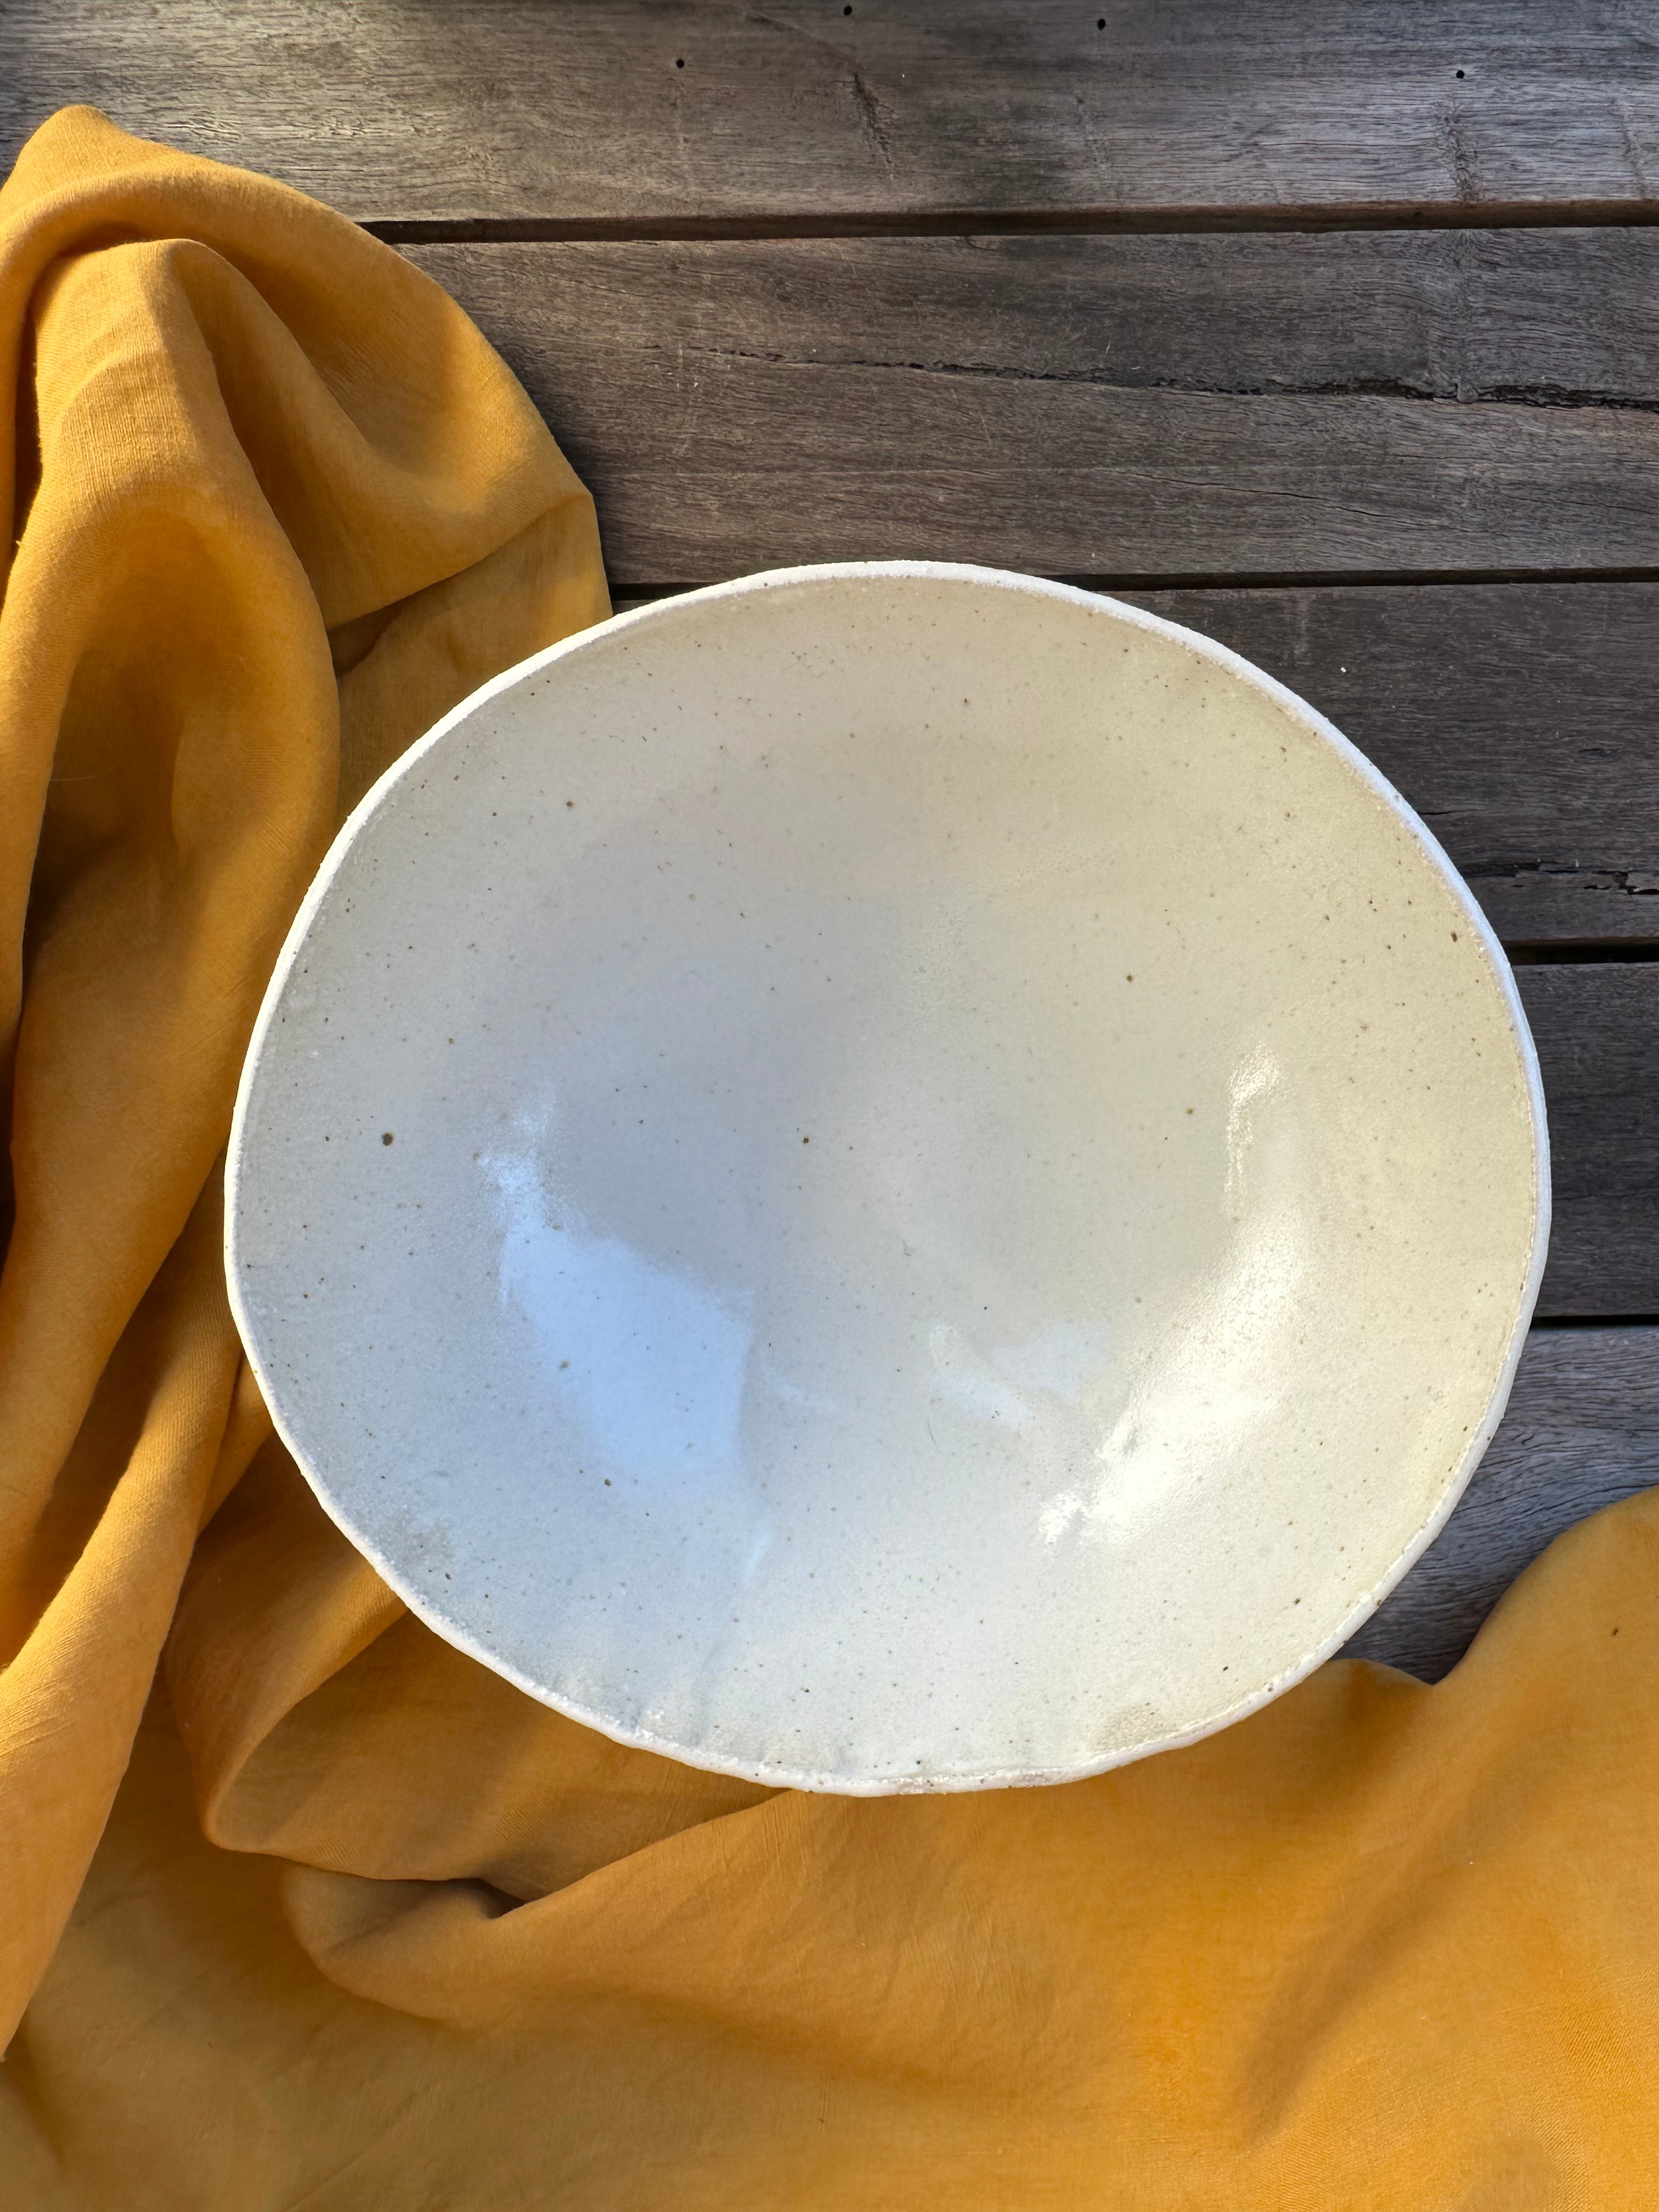 Large daily bowl - raku